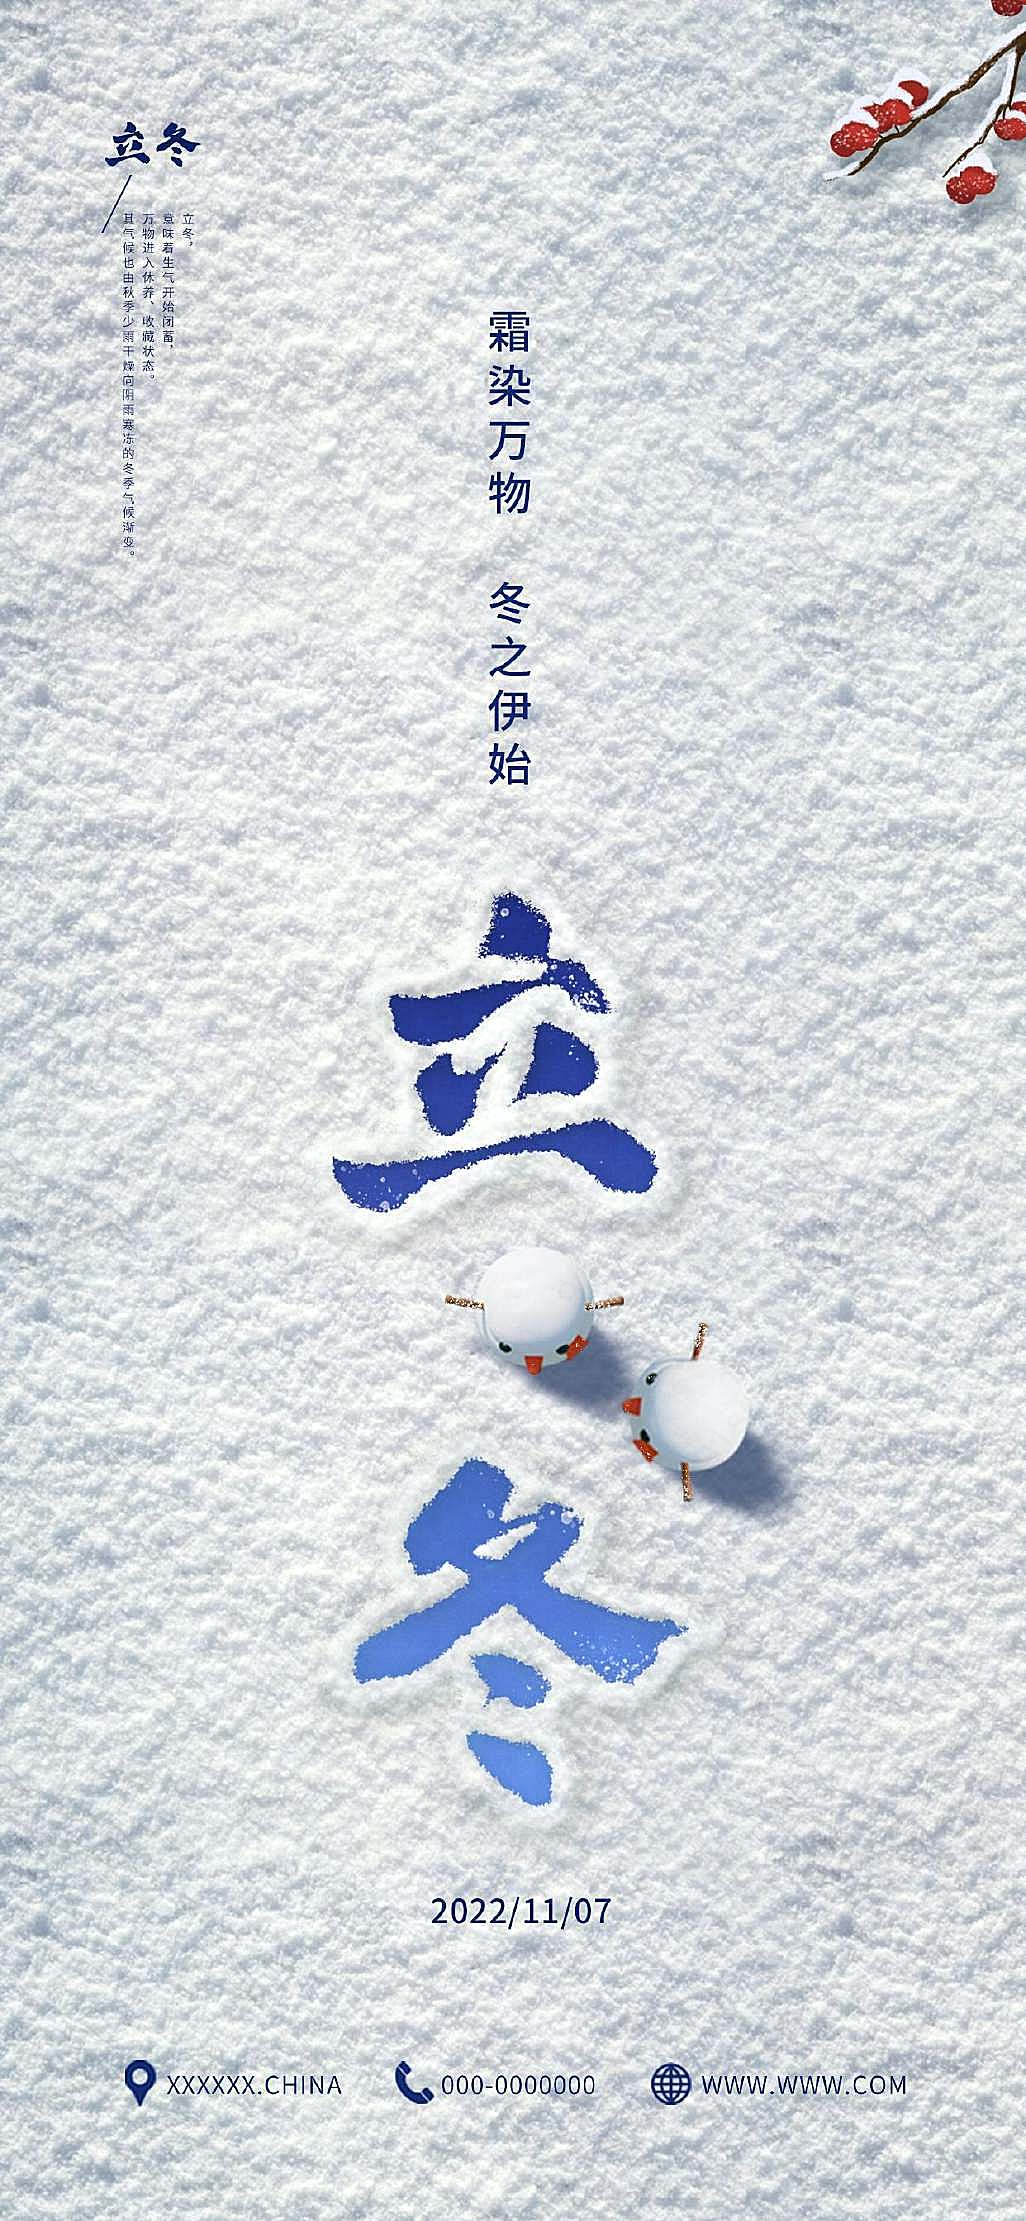 冰雪创意立冬节日艺术海报手机壁纸壁纸配图新媒体用图下载